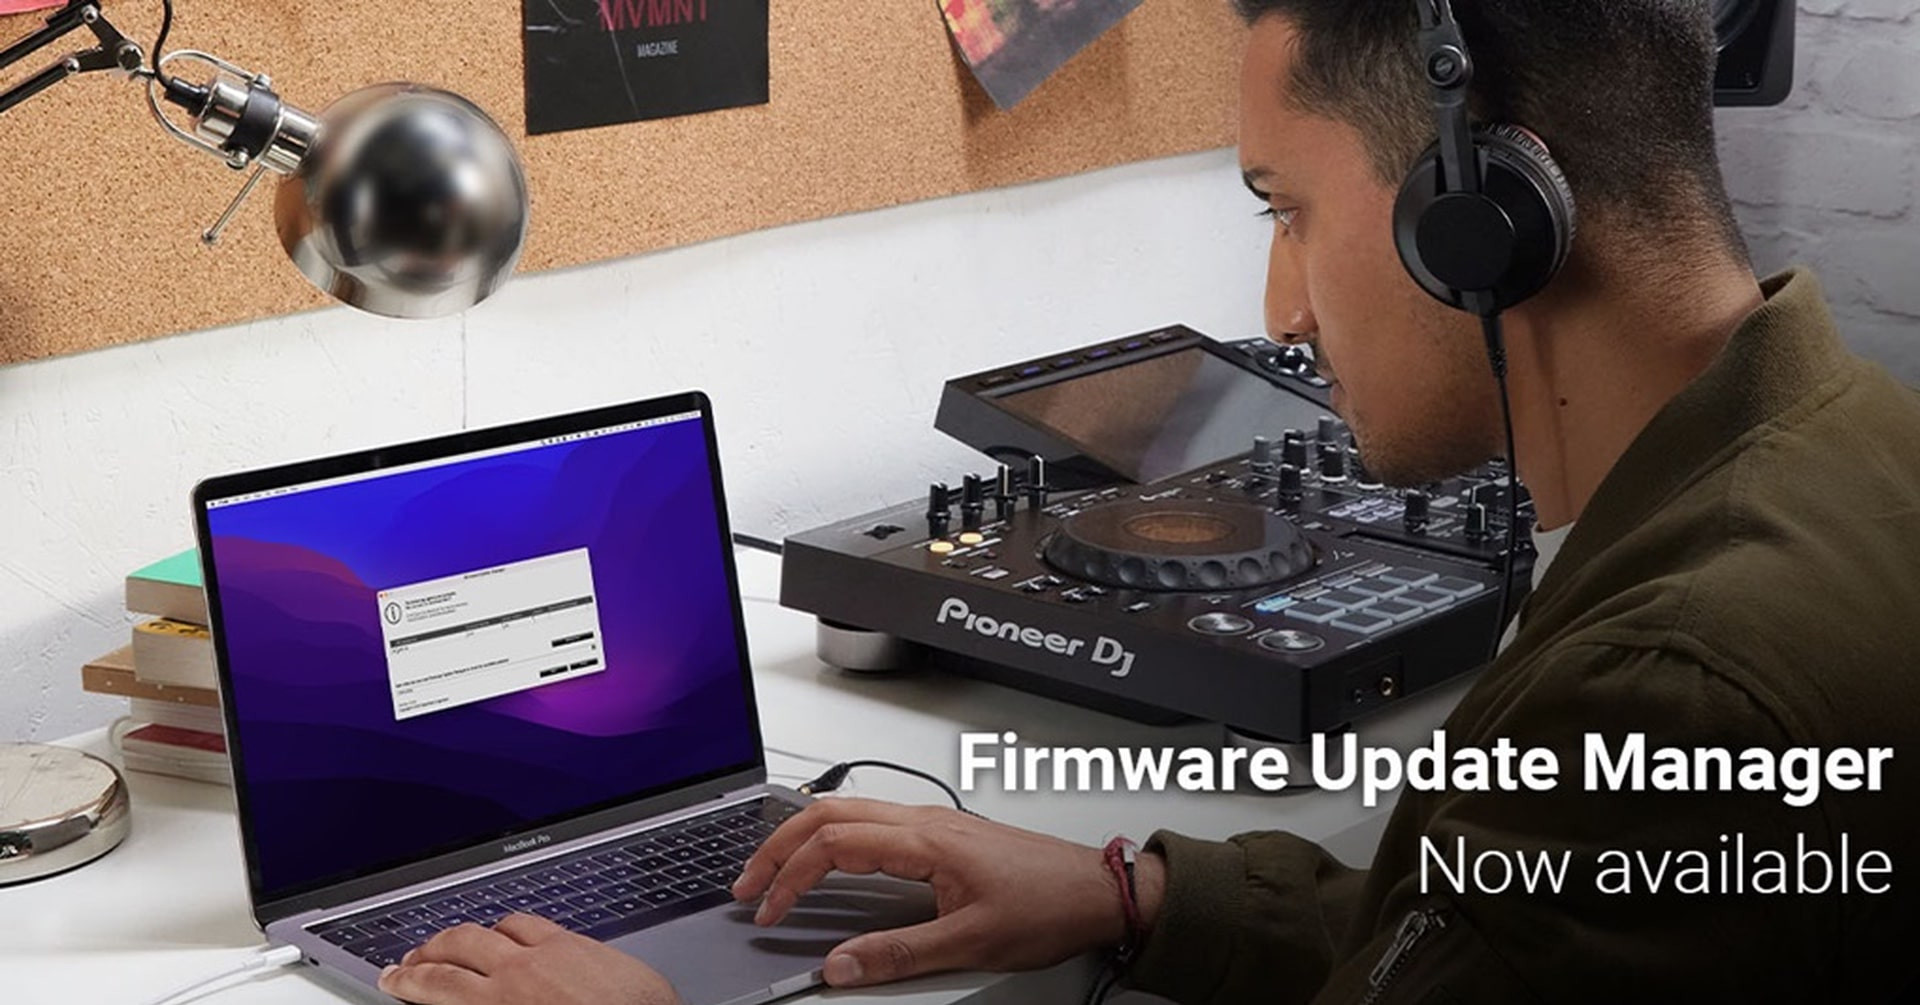 Automatyczne powiadomienia o aktualizacjach firmware’u - nowa usługa dla produktów Pioneer DJ